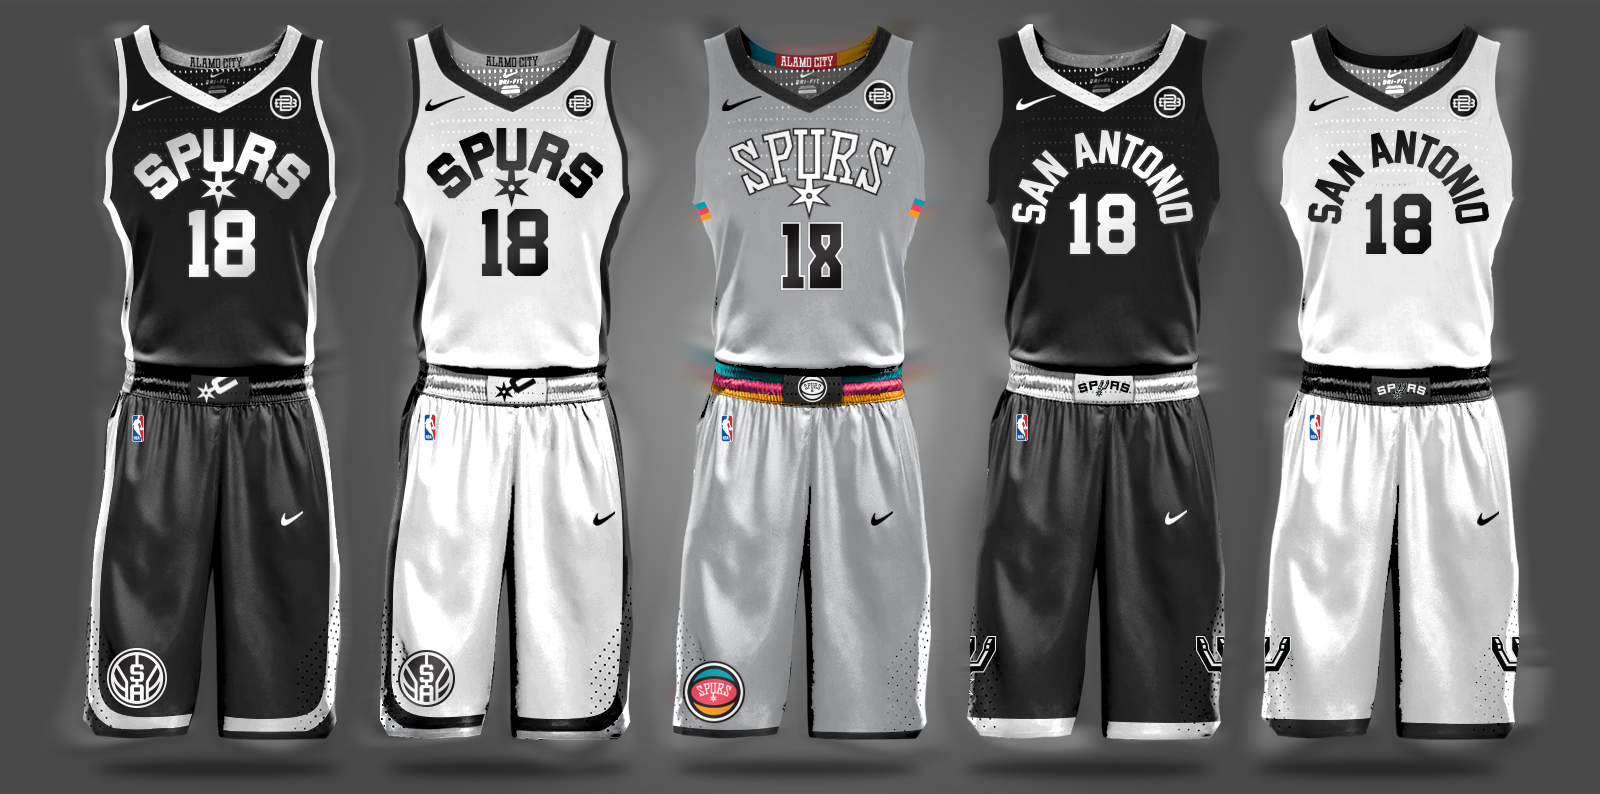 2018/19 NIKE x NBA Uniform Concepts